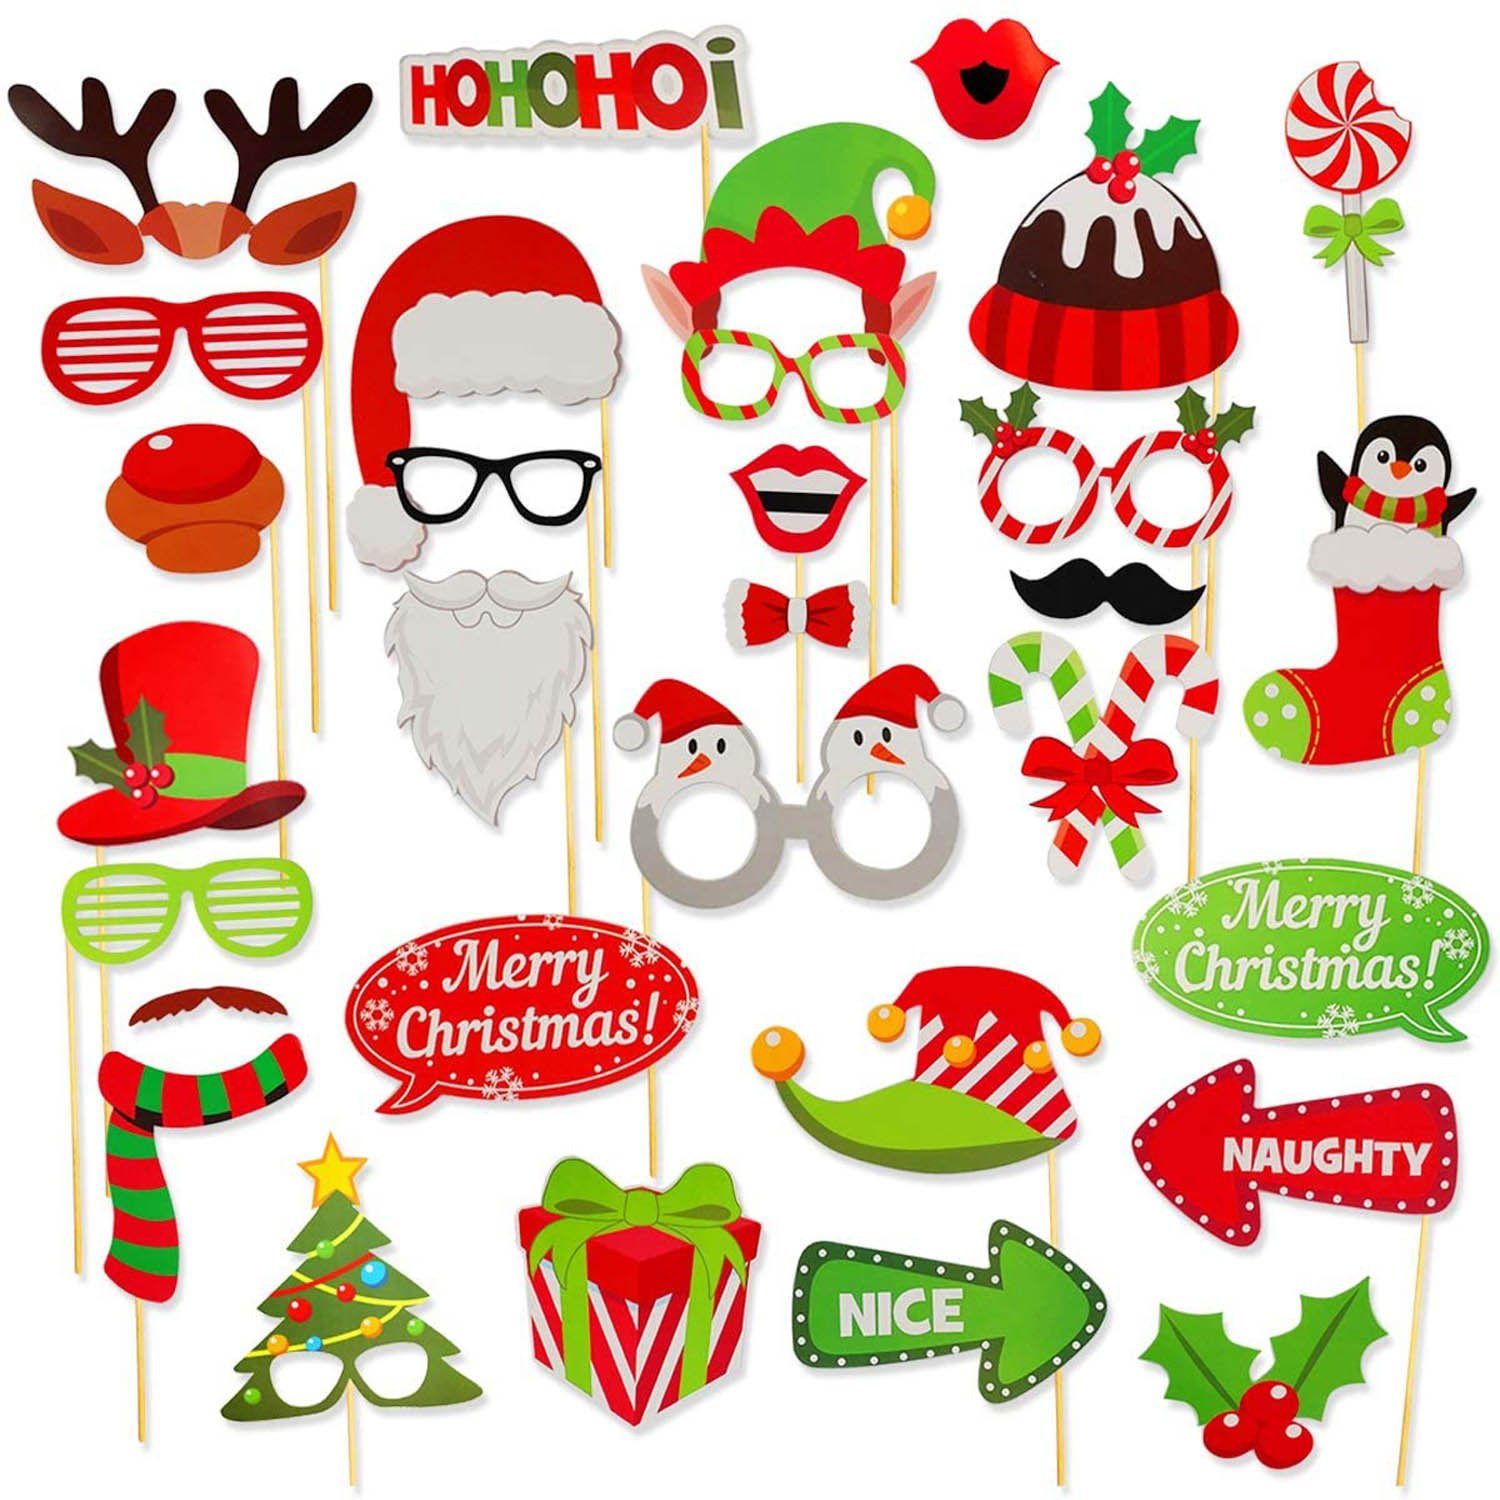 Goods+Gadgets Papierdekoration Foto Sticks Weihnachten Weihnachtsbilder Foto-Requisiten